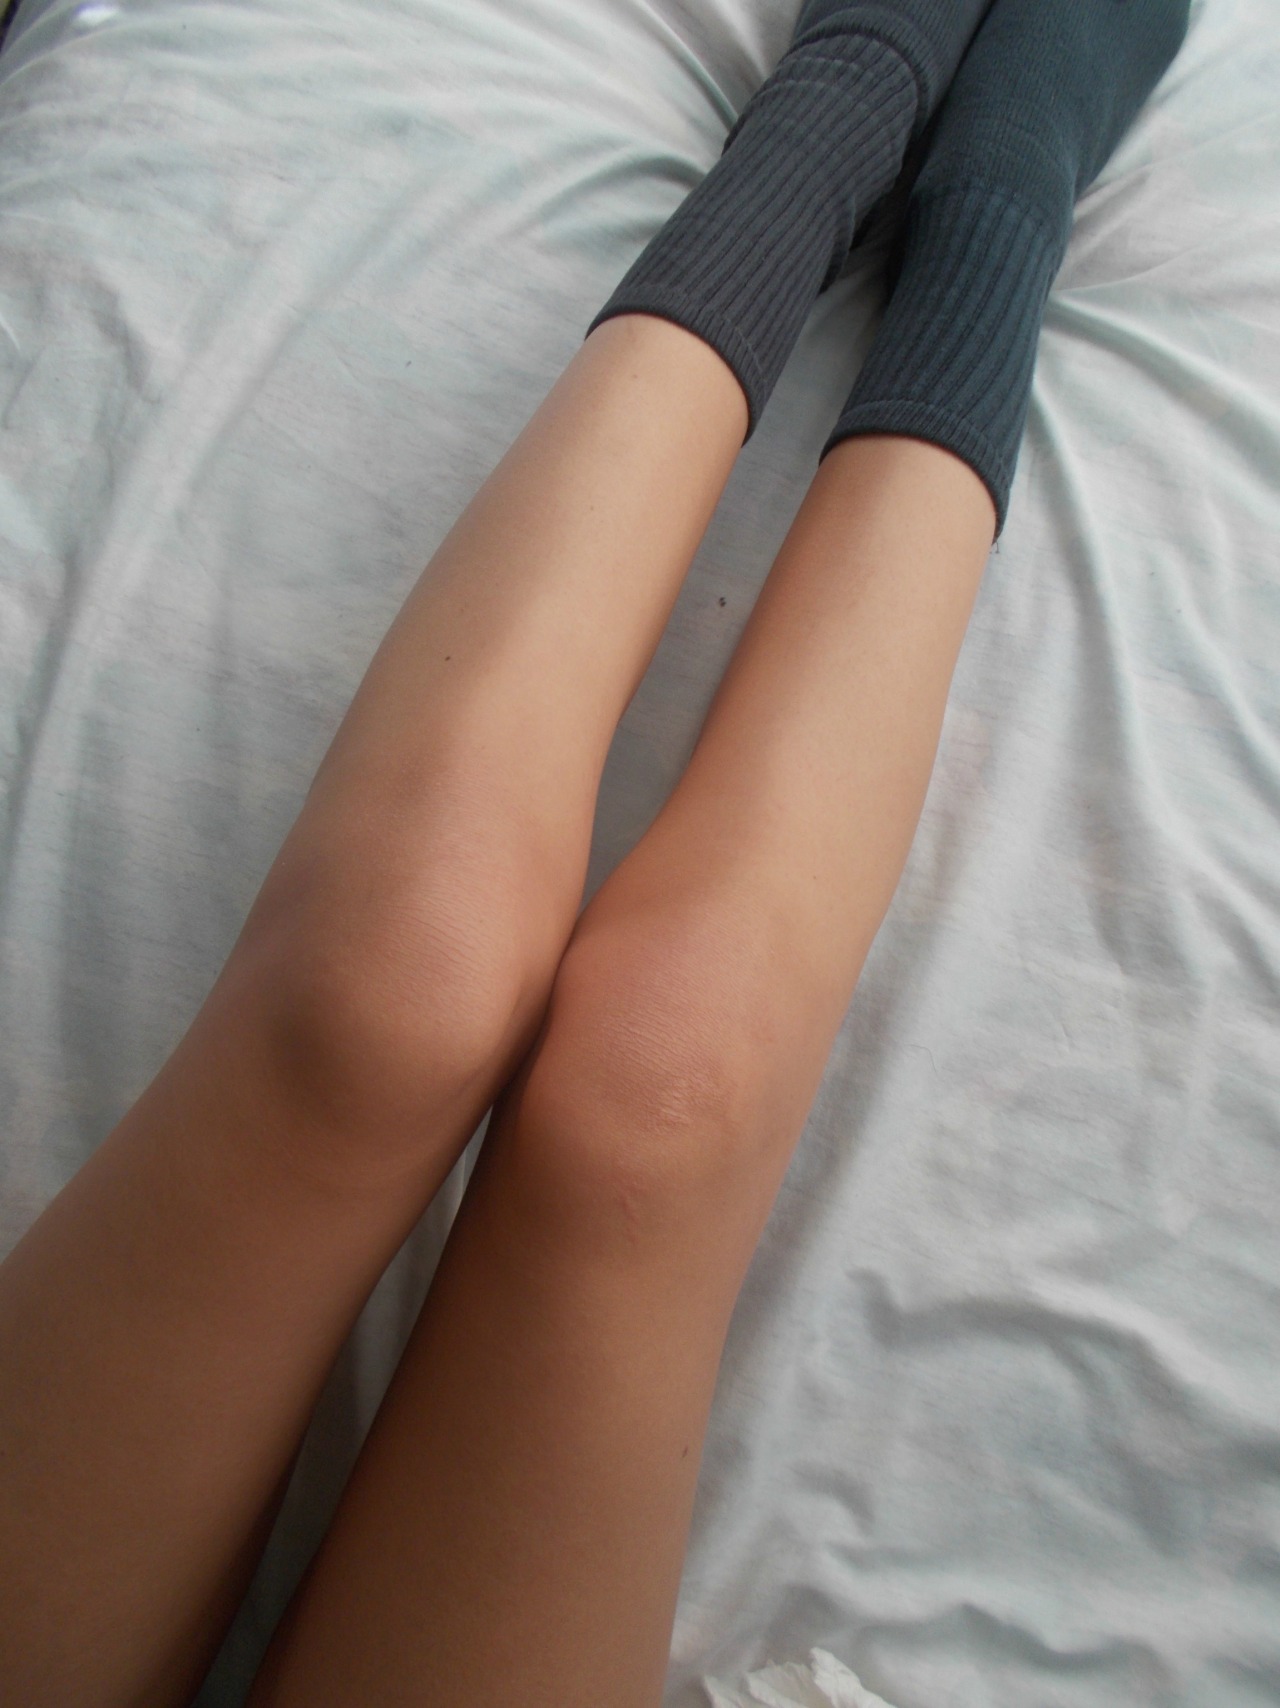 Бедра стройные ноги девушки. Стройные ноги Эстетика от первого лица. Стройные ноги Эстетика. Стройные ноги девушки плохое качество.